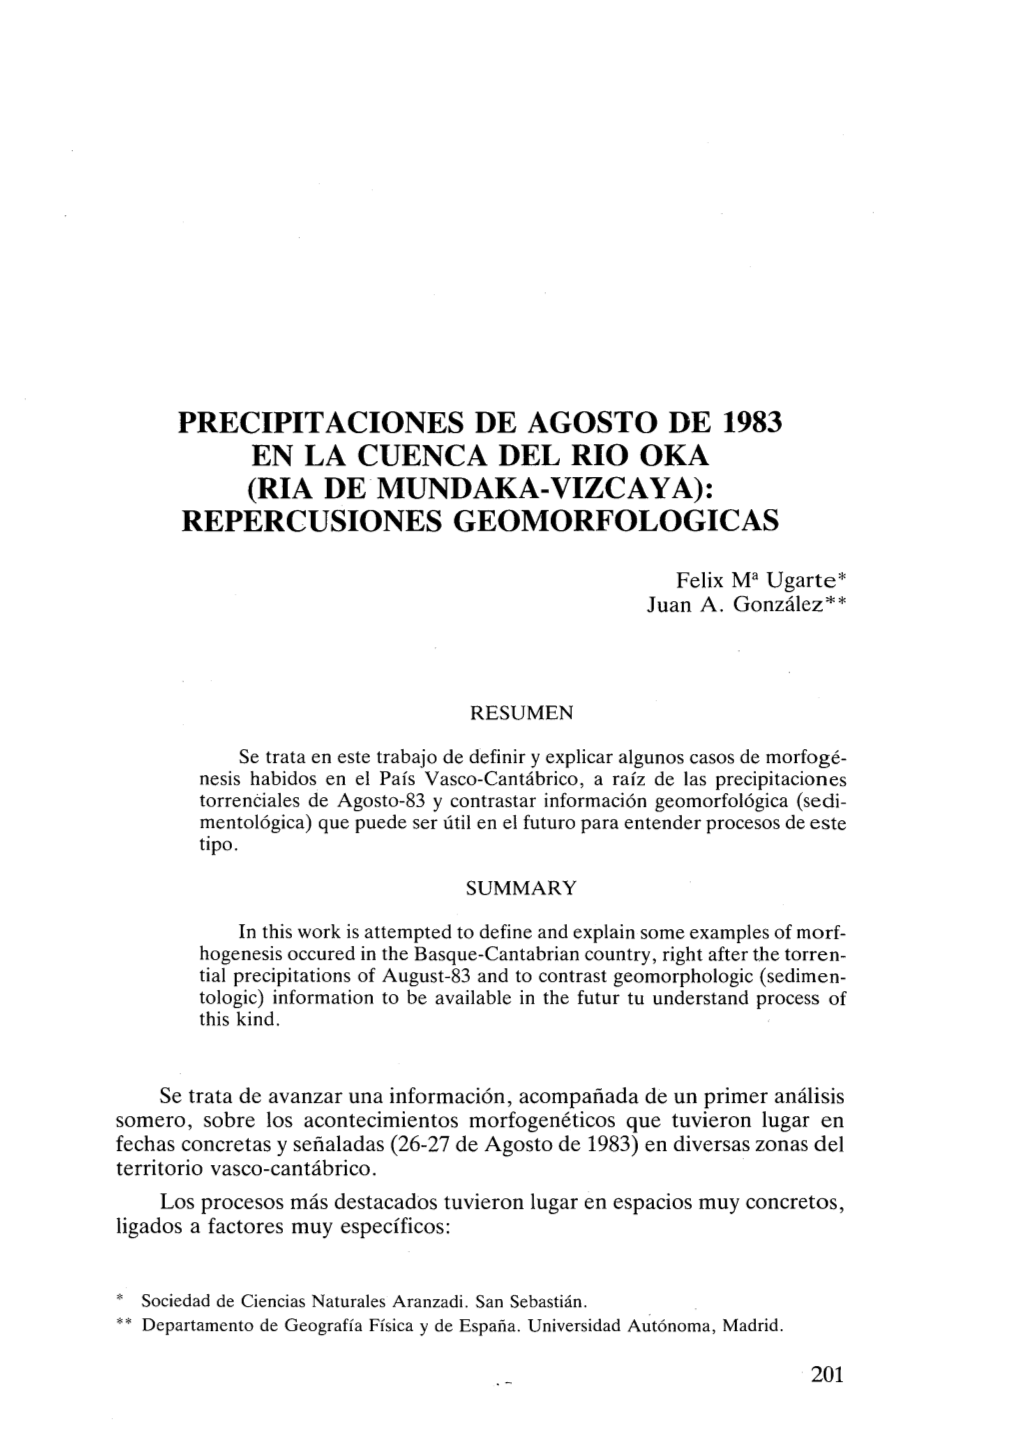 Precipitaciones De Agosto De 1983 En La Cuenca Del Rio Oka (Ria De Mundaka-Vizcaya): Repercusiones Geomorfologicas